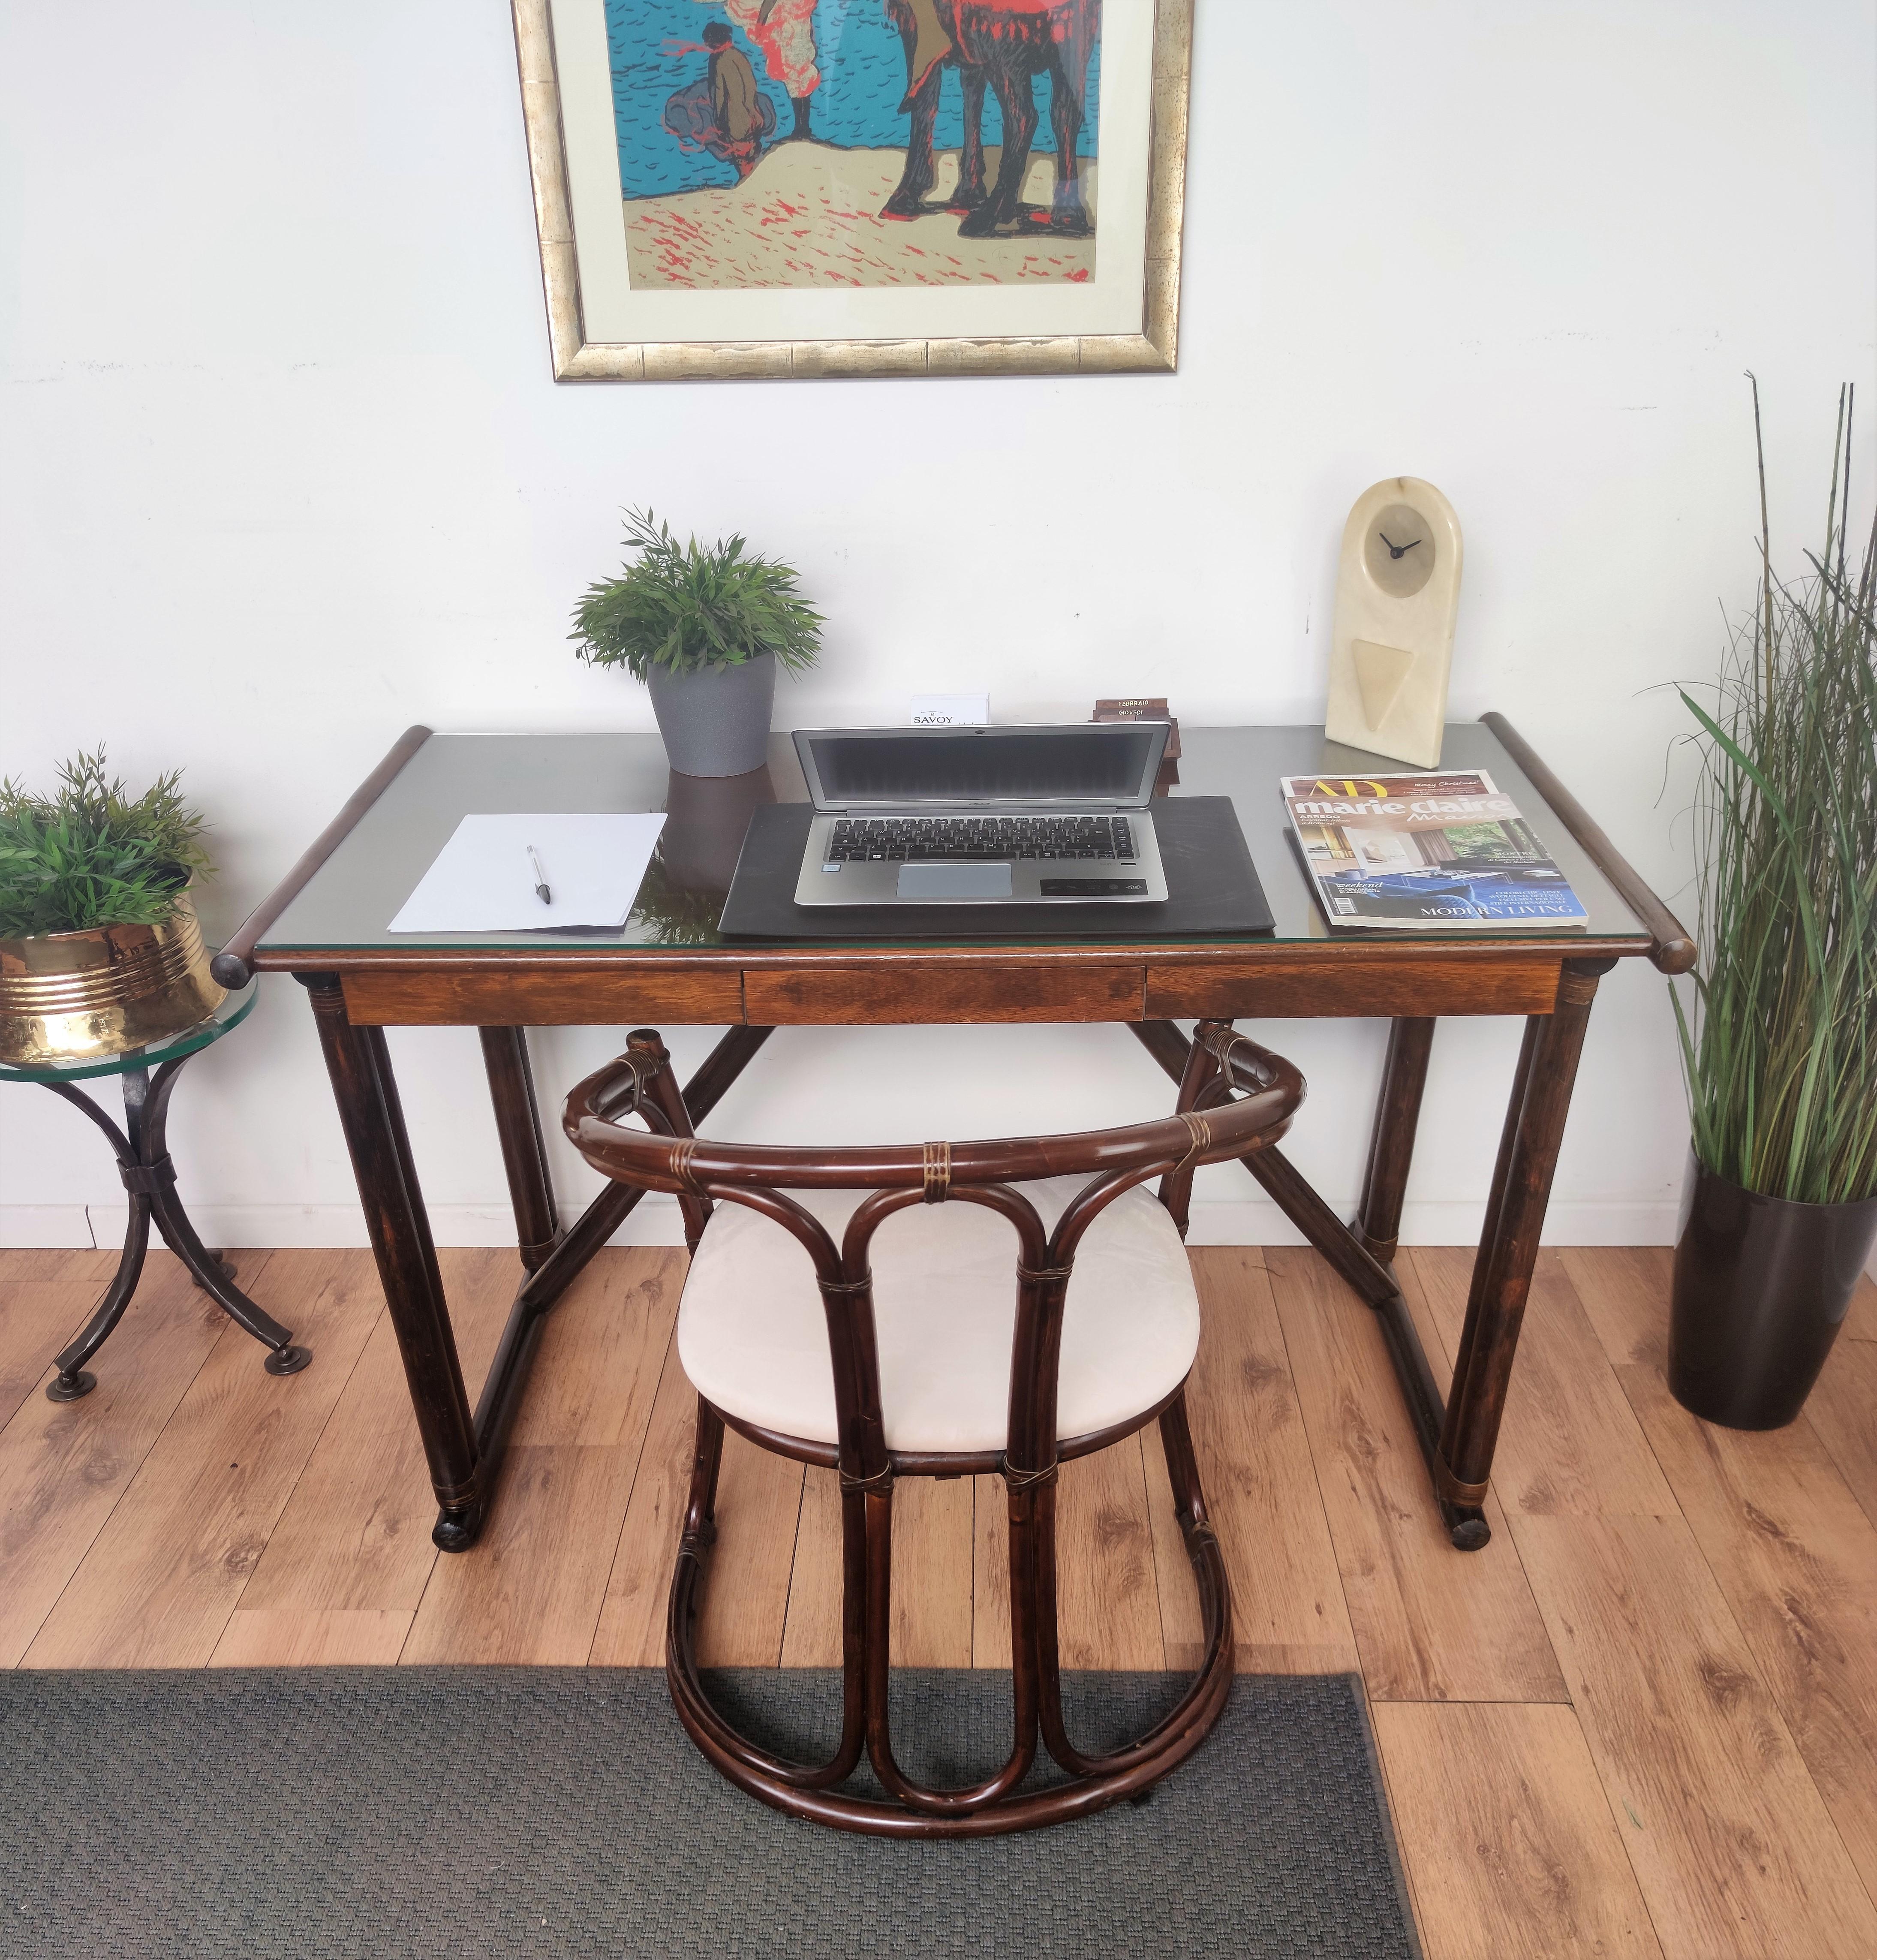 Magnifique table à écrire ou bureau italien de style Régence du milieu du siècle et sa chaise récemment rembourrée, tous deux en bois très façonné et travaillé, inspirés du style bohème organique typique du bambou. 

Le bureau est doté d'un